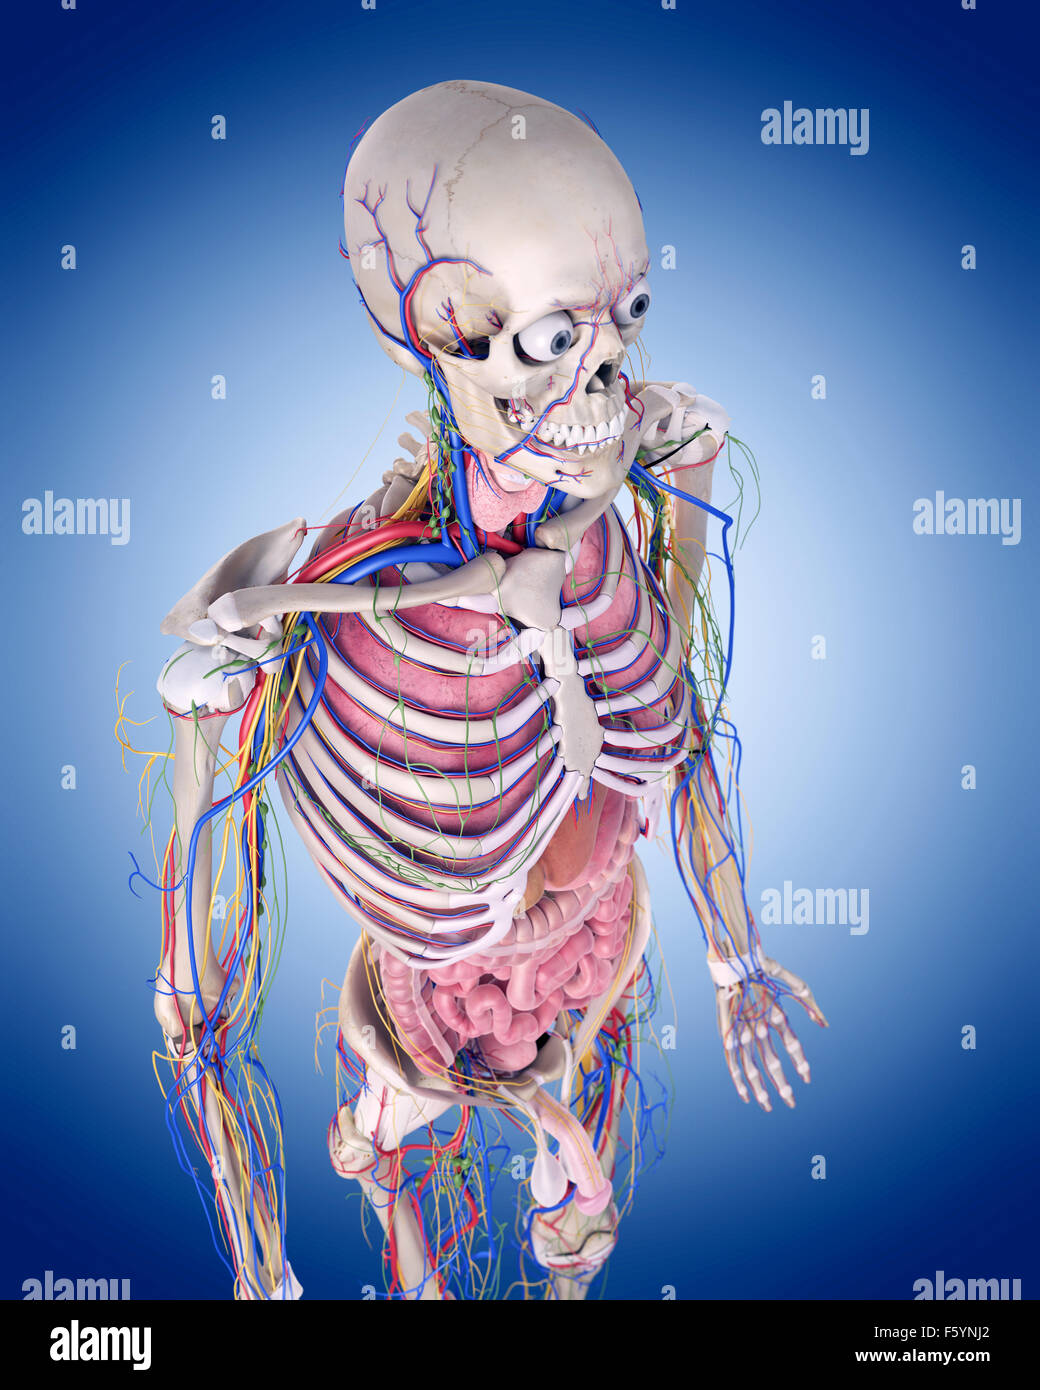 Dal punto di vista medico illustrazione accurata dell'anatomia umana Foto Stock